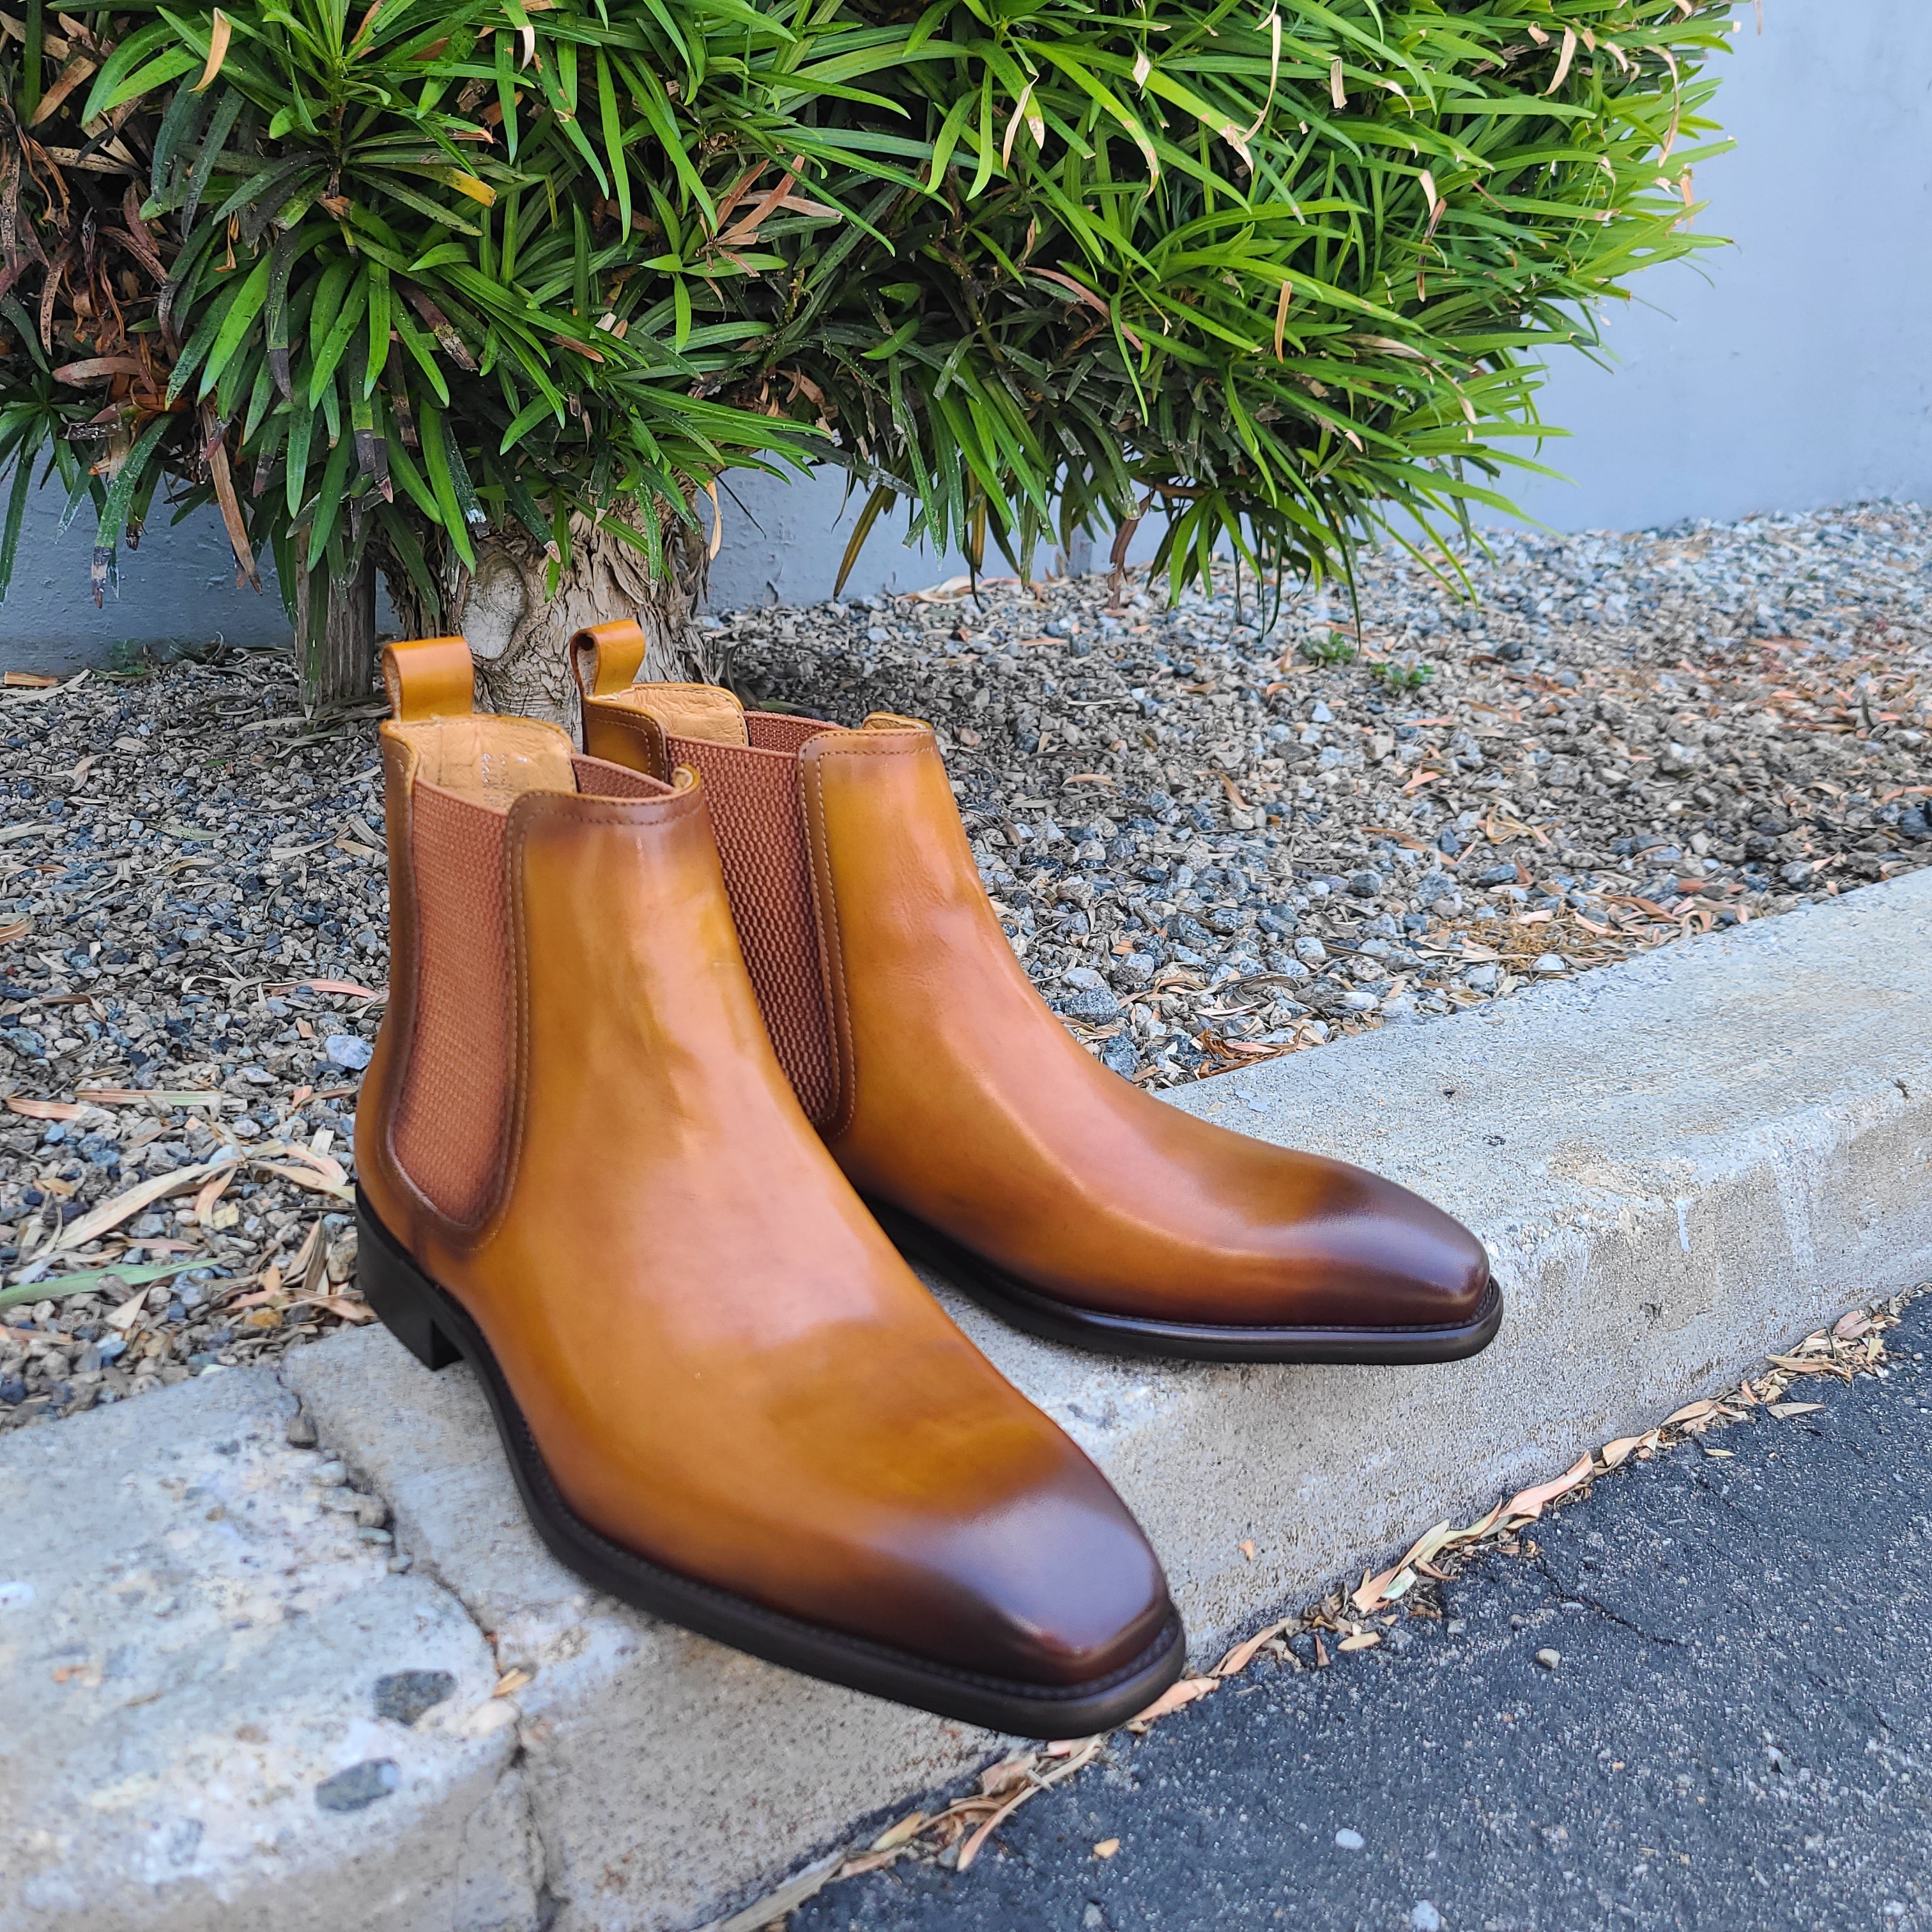 A pair of Cognac color boots